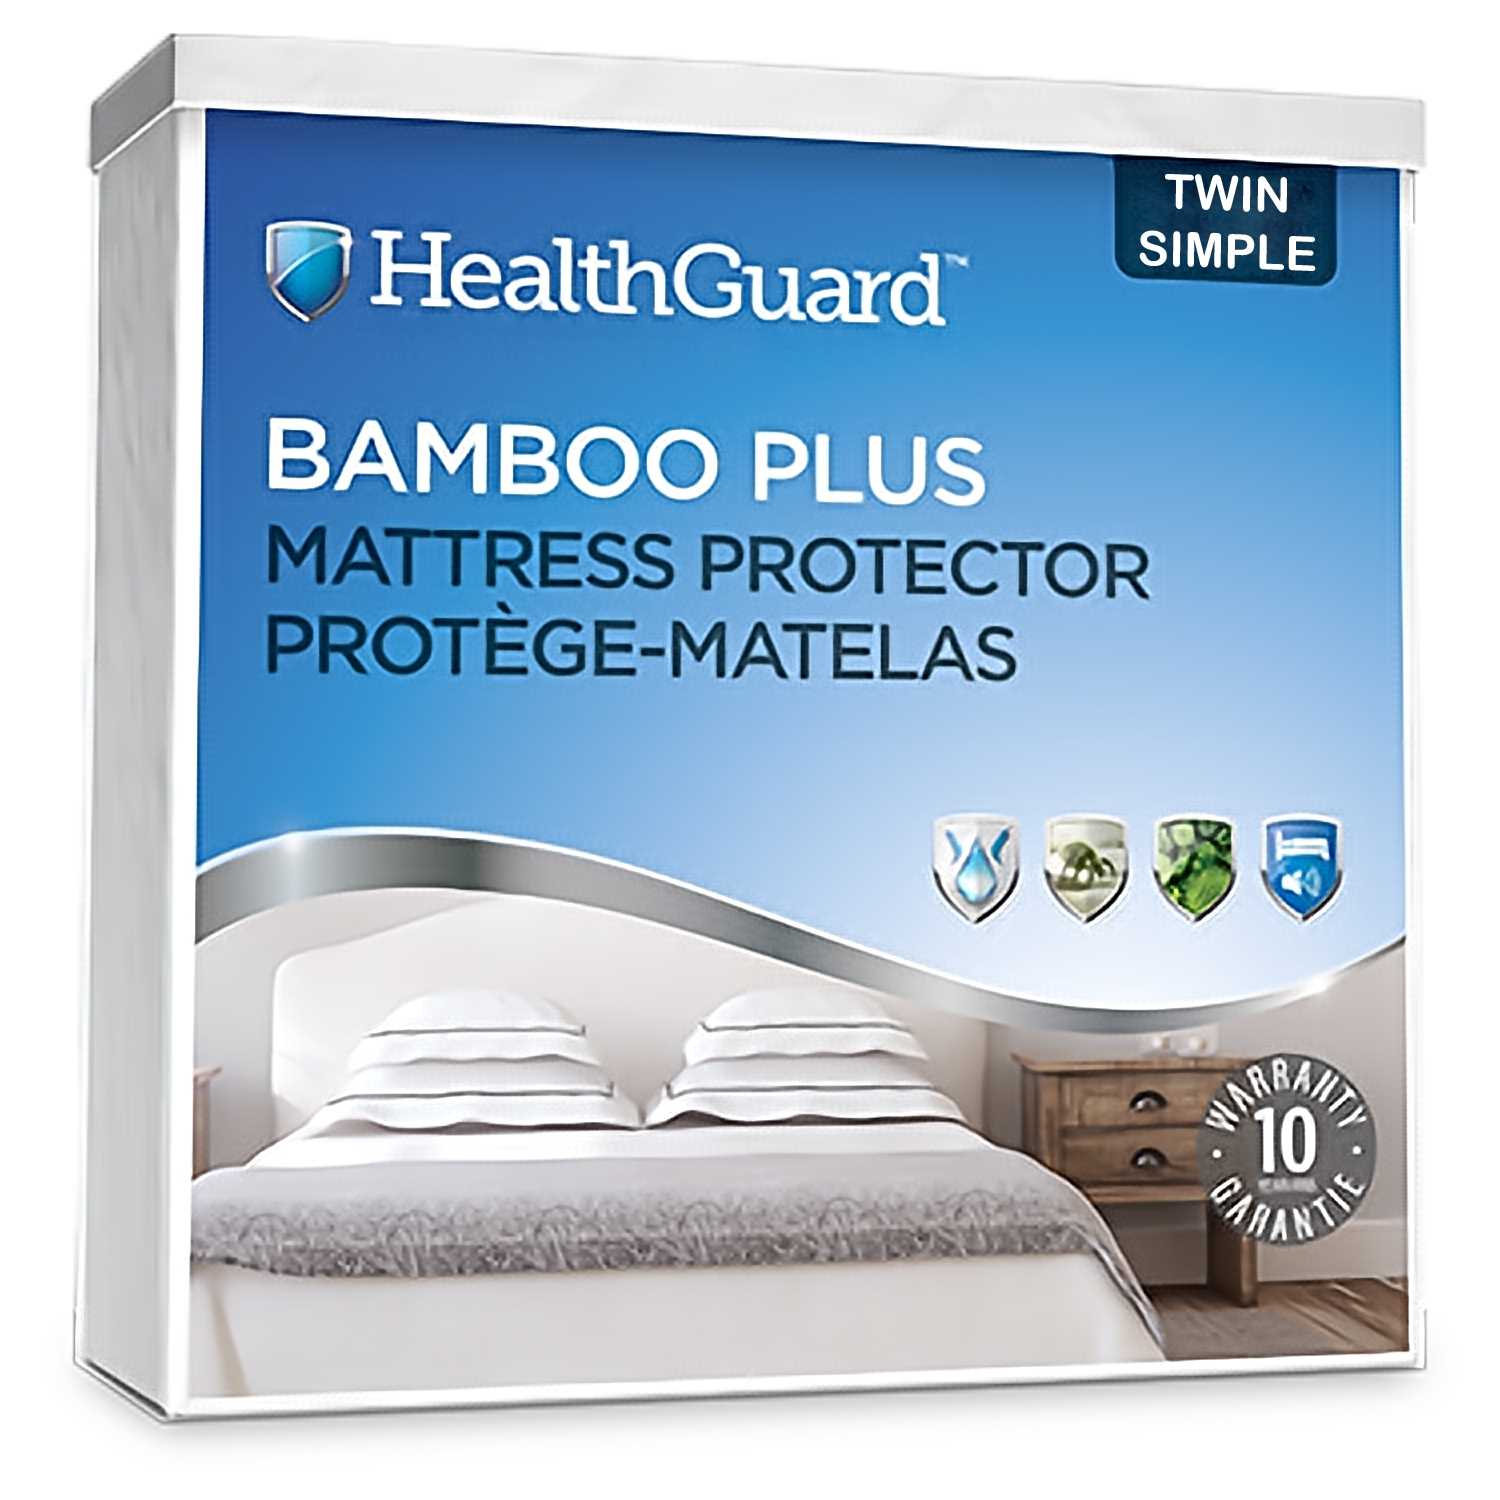 Health Guard Bamboo Plus Mattress Protector - Single / Twin